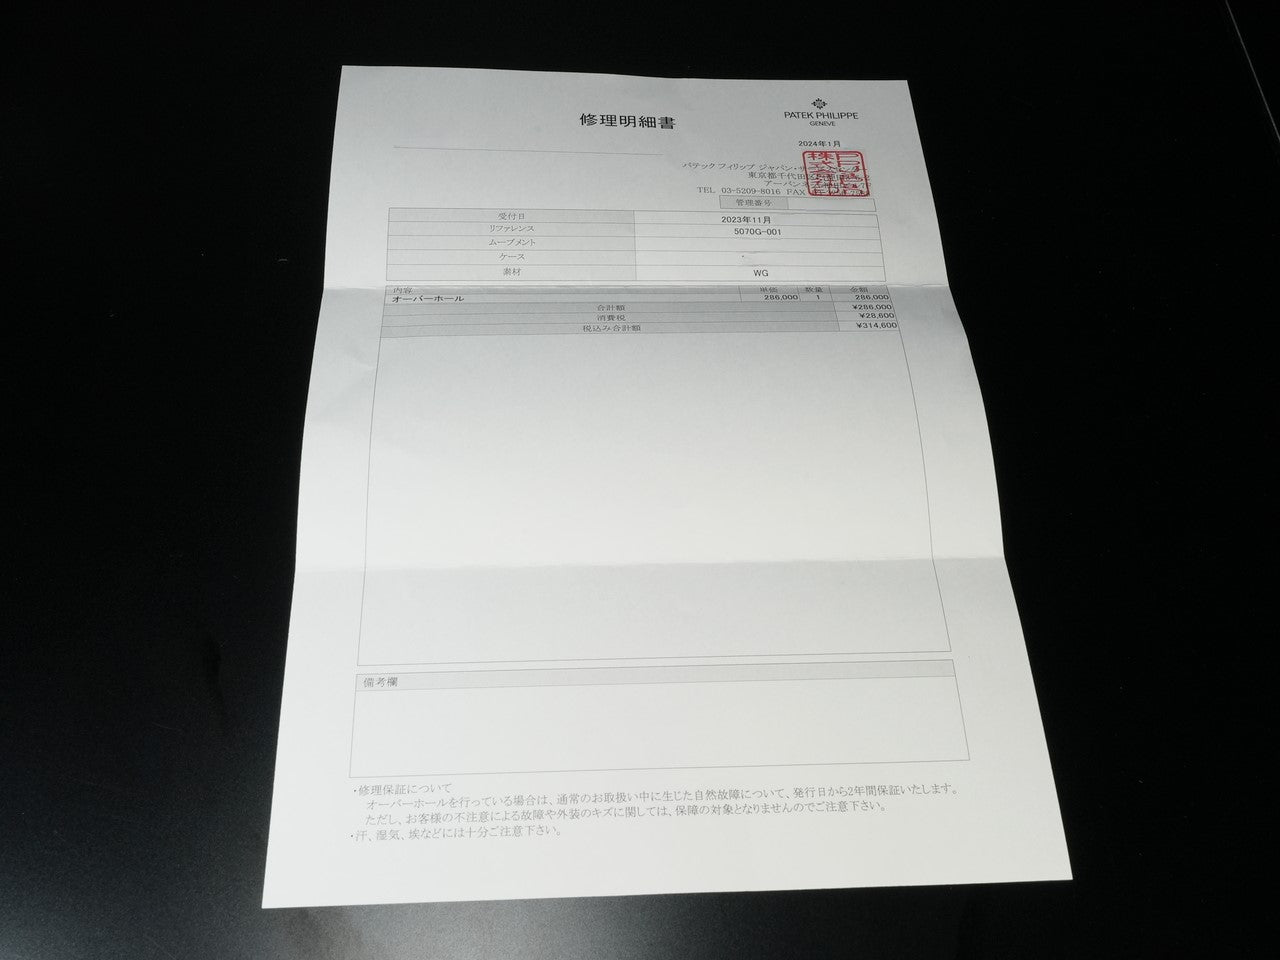 パテックフィリップ クロノグラフ Ref.5070G-001 18KWG シルバー文字盤